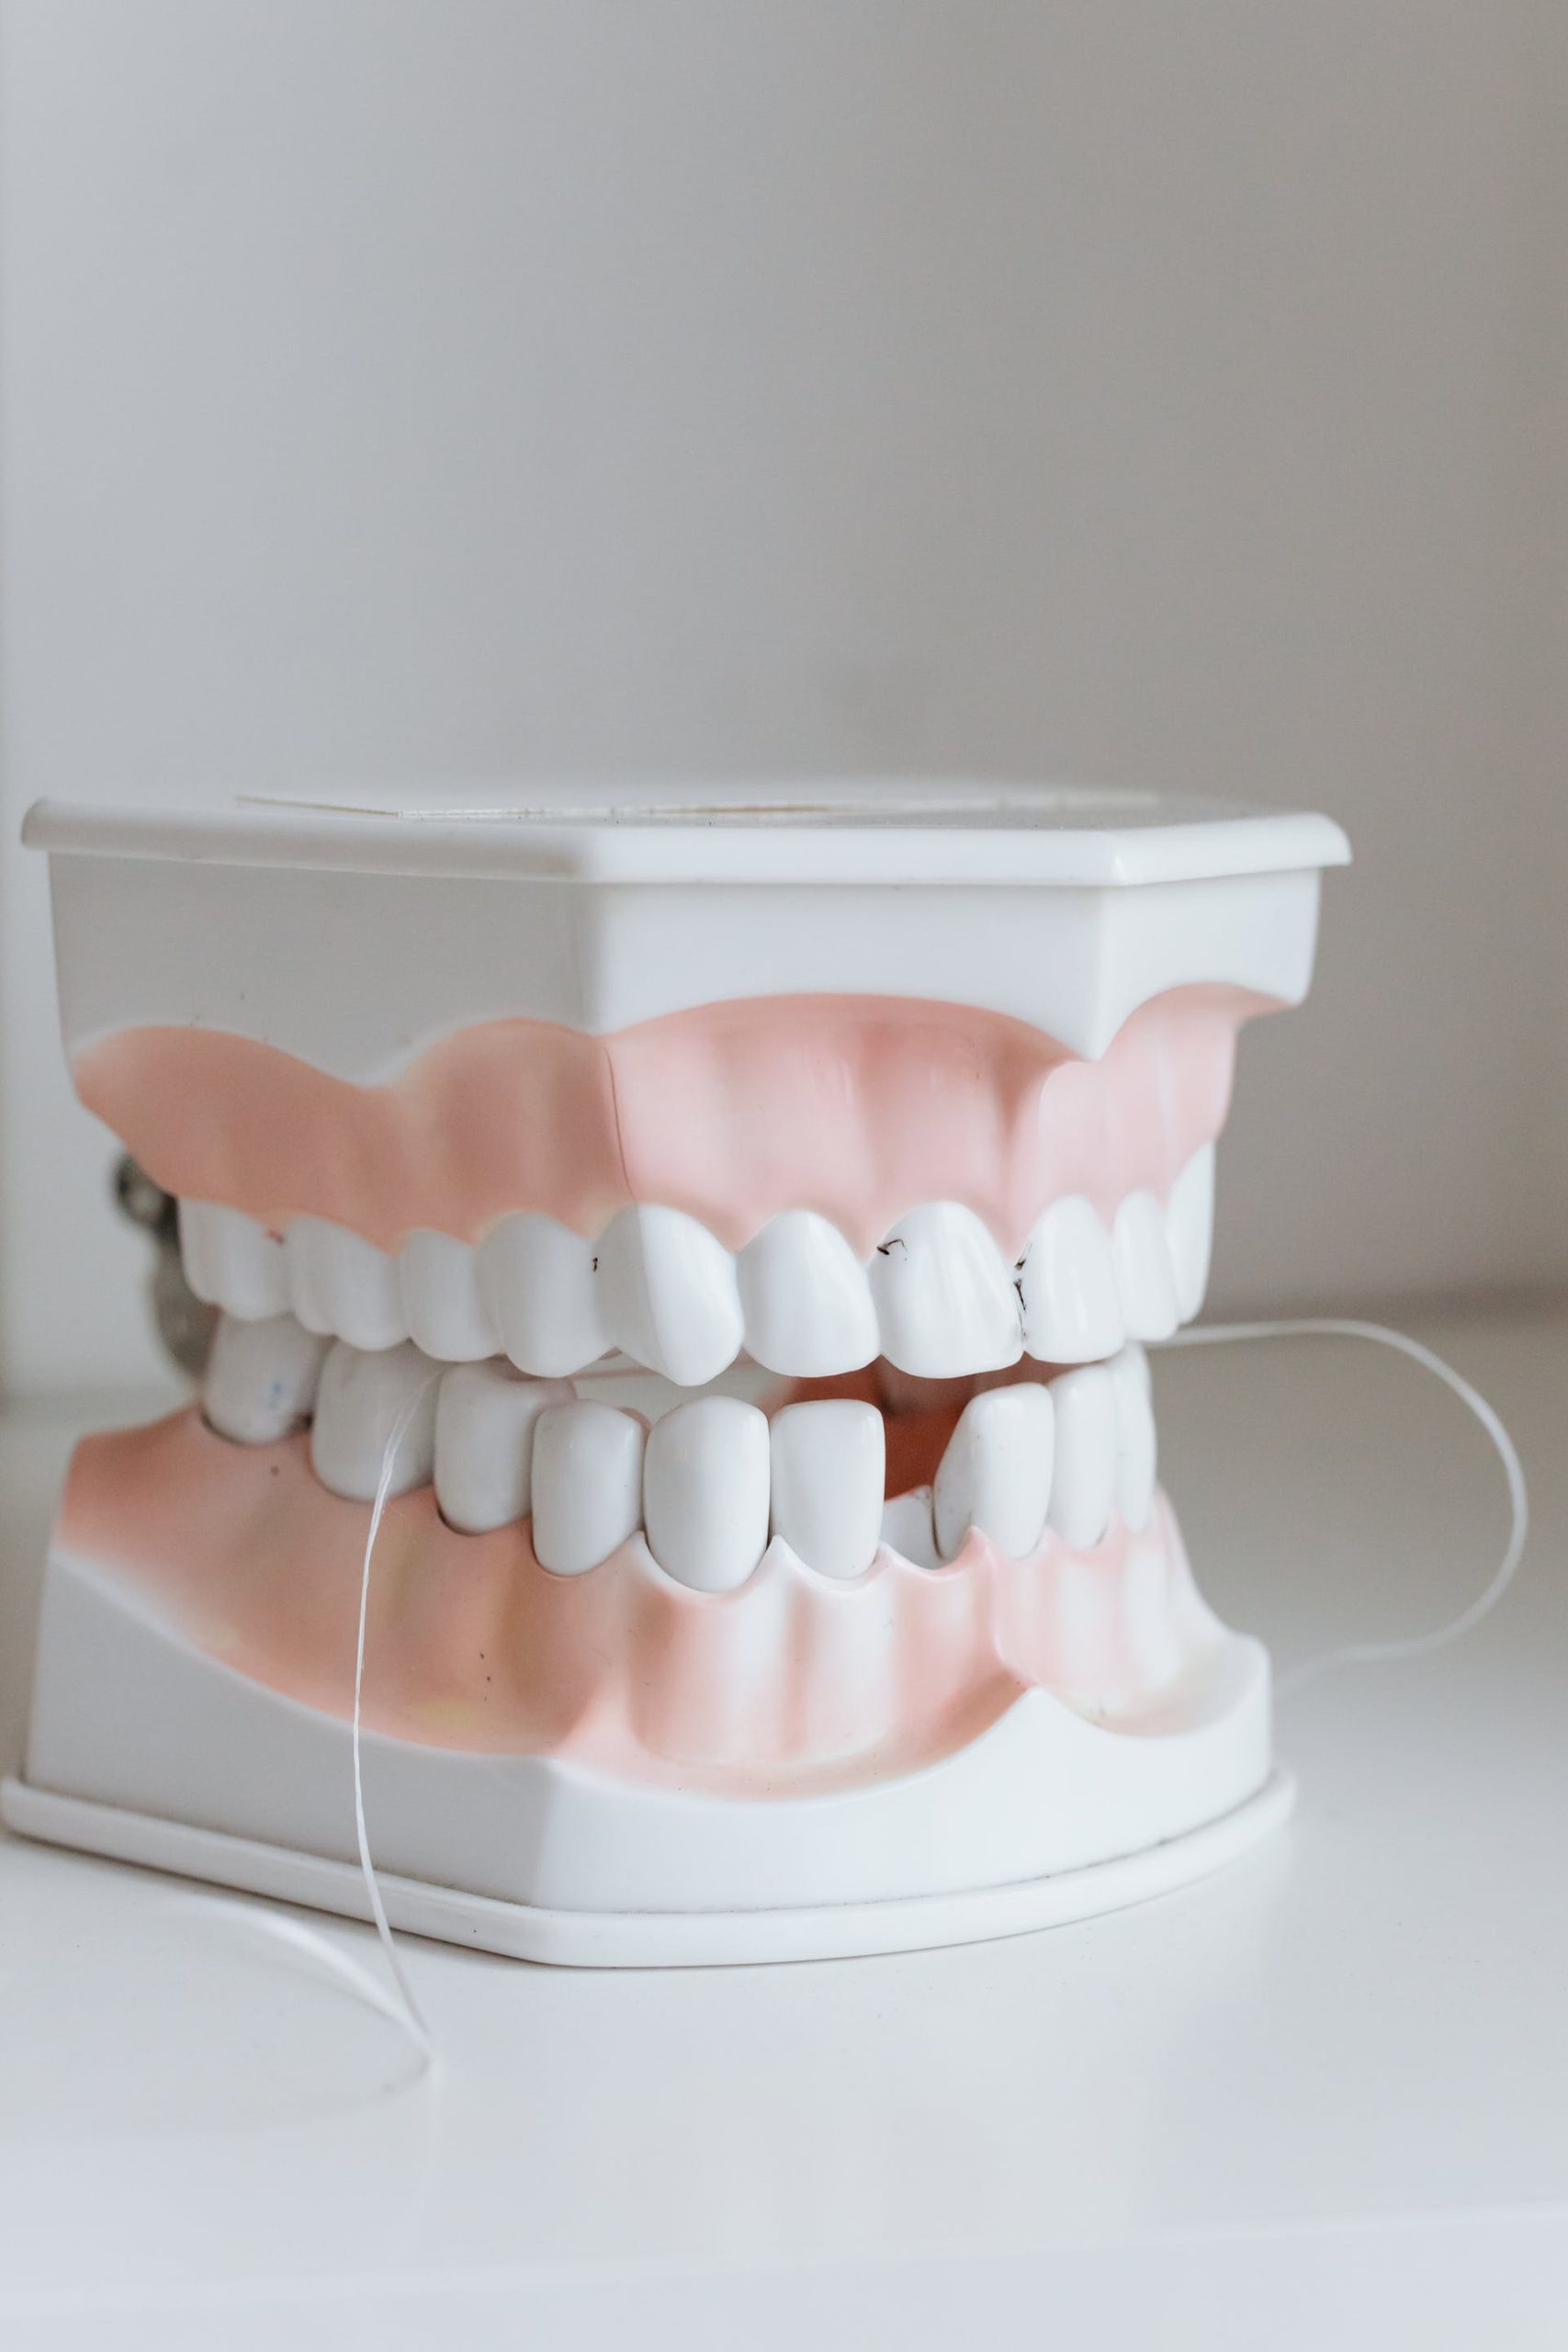 Rodzaje protez zębowych i wybór między nimi